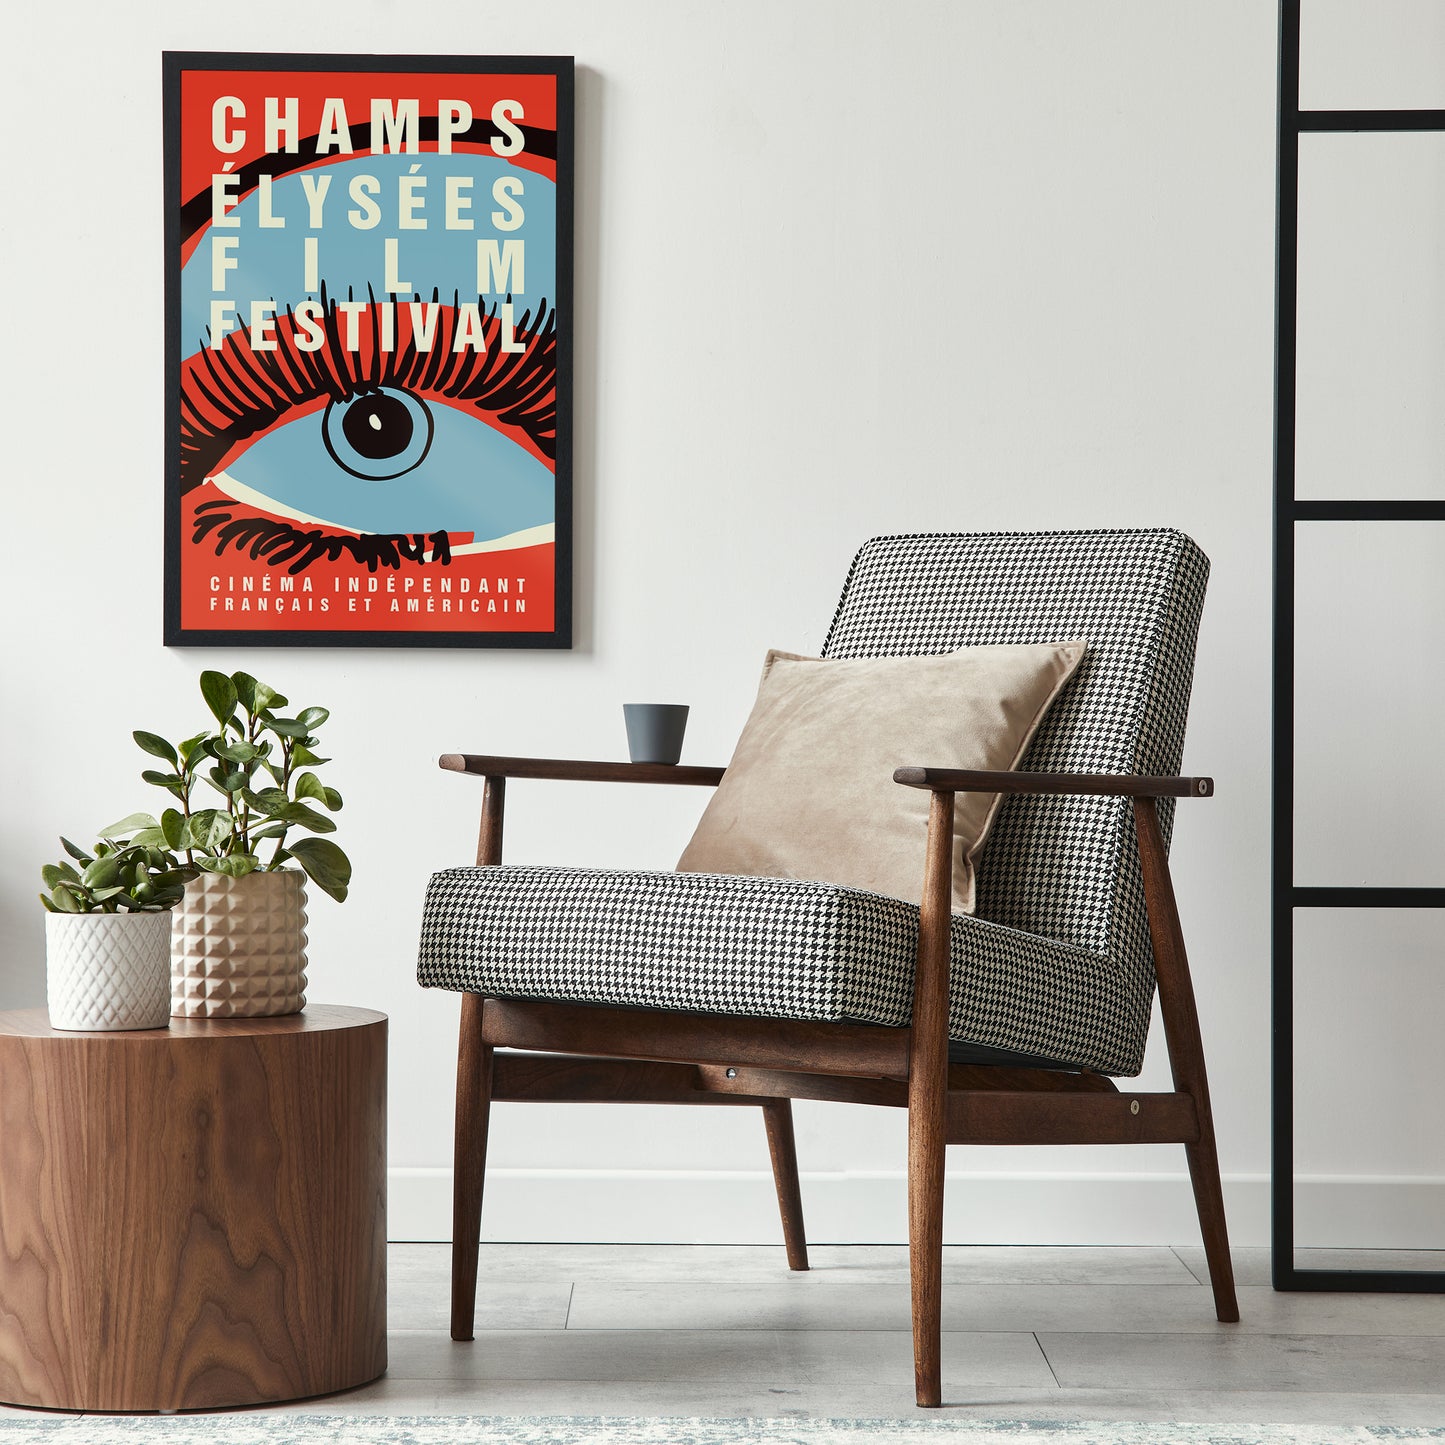 Champs Elysees Film Festival Poster